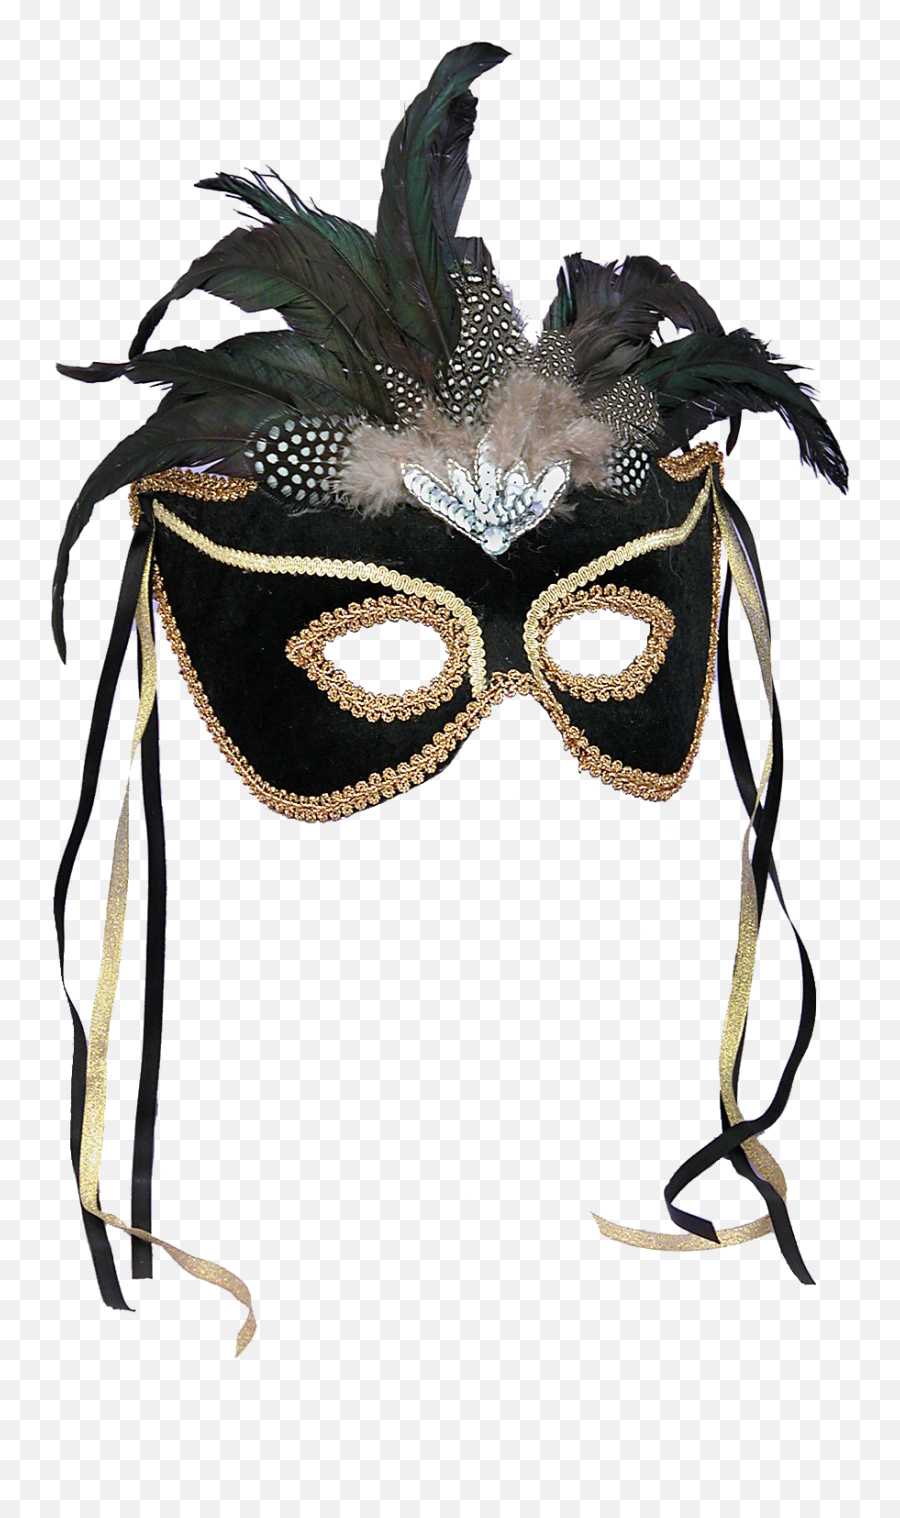 Download Phantom Ball Masquerade Mask Halloween Costume - Background Masquerade Mask Masquerade Theme Party Png,Masquerade Mask Png